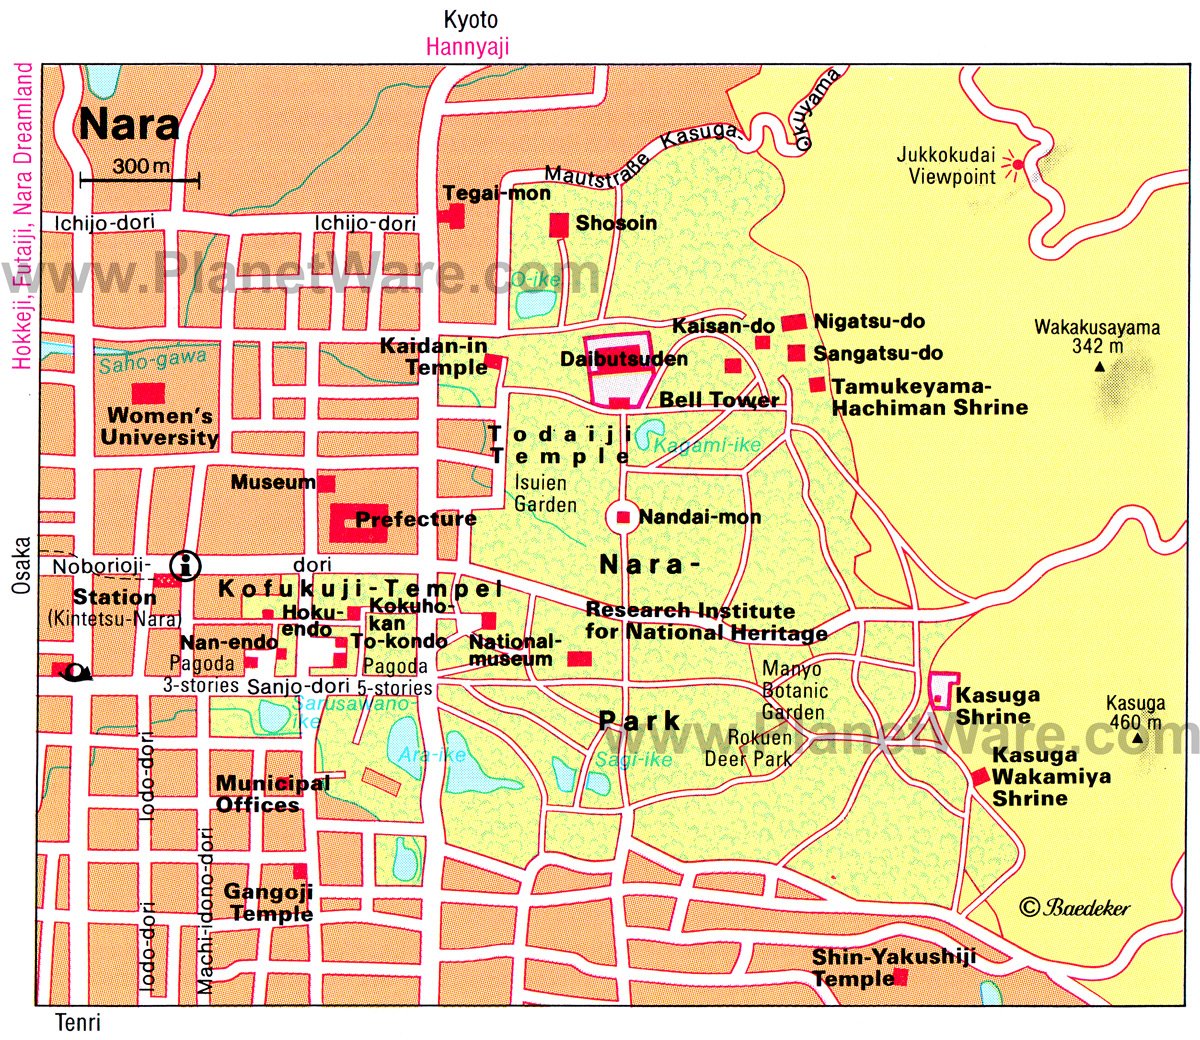 qué ver y hacer en Nara (Kansai)  -Japón - Viajar a Nara en Japón, cómo combinarla ✈️ Foro Japón y Corea